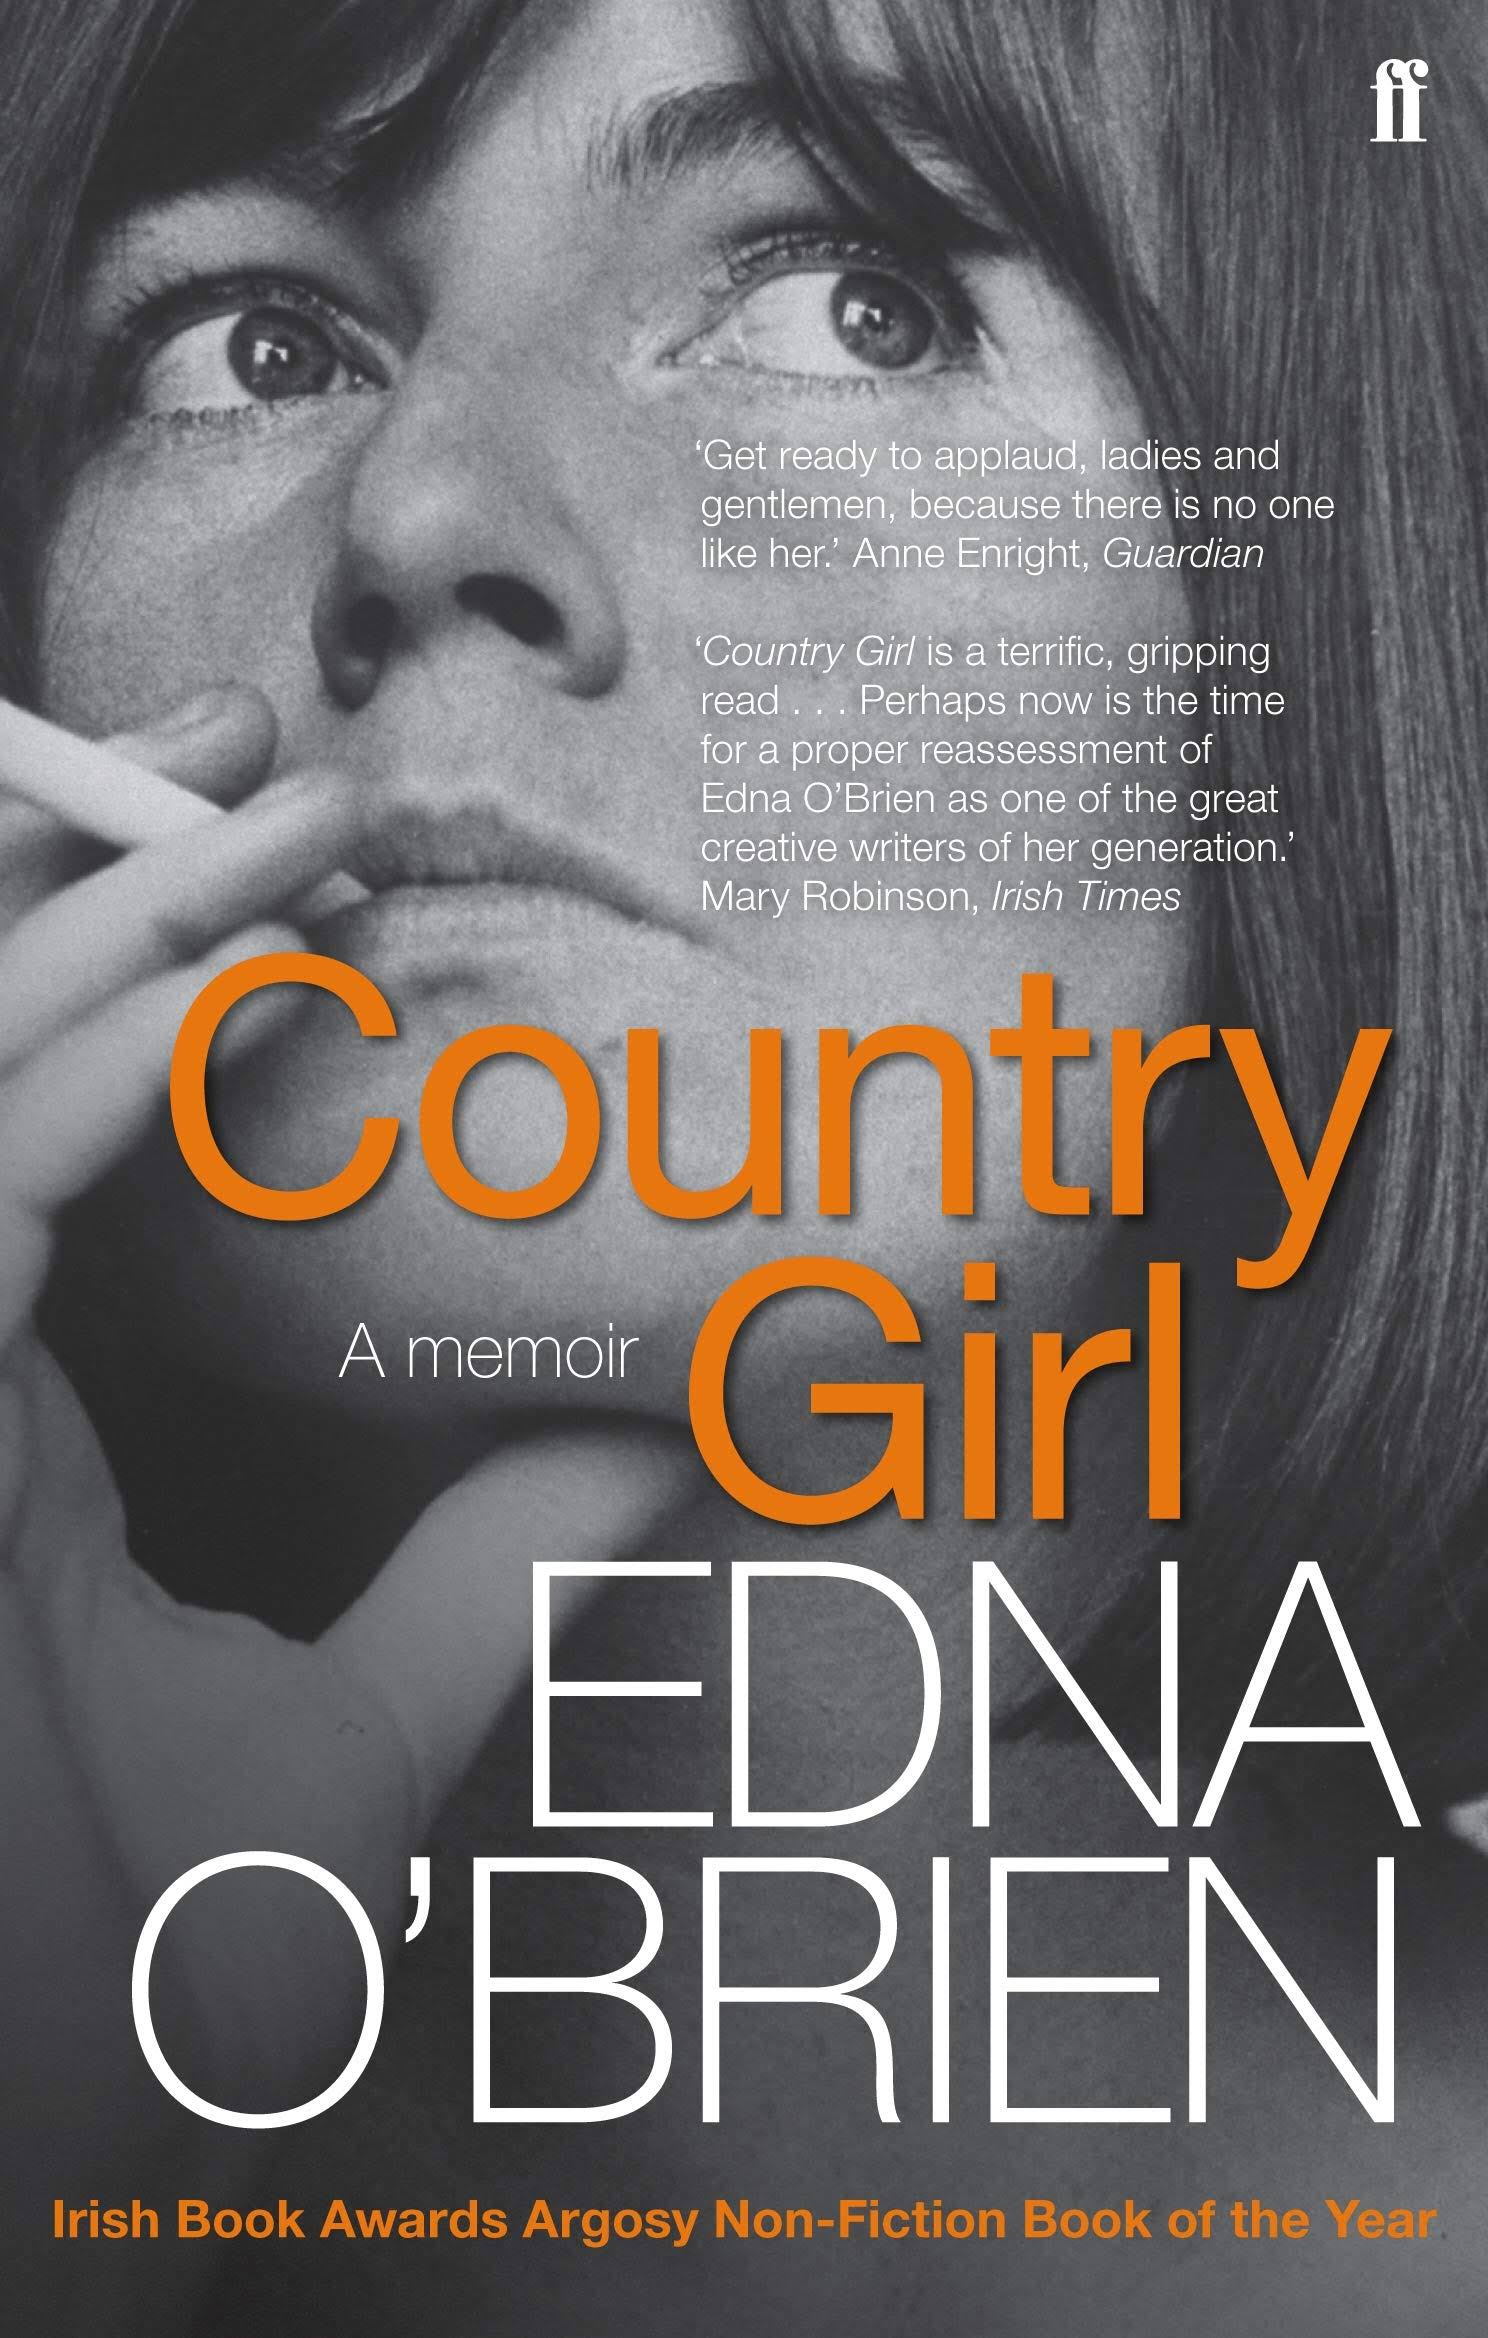 Country Girl - Edna O'Brien